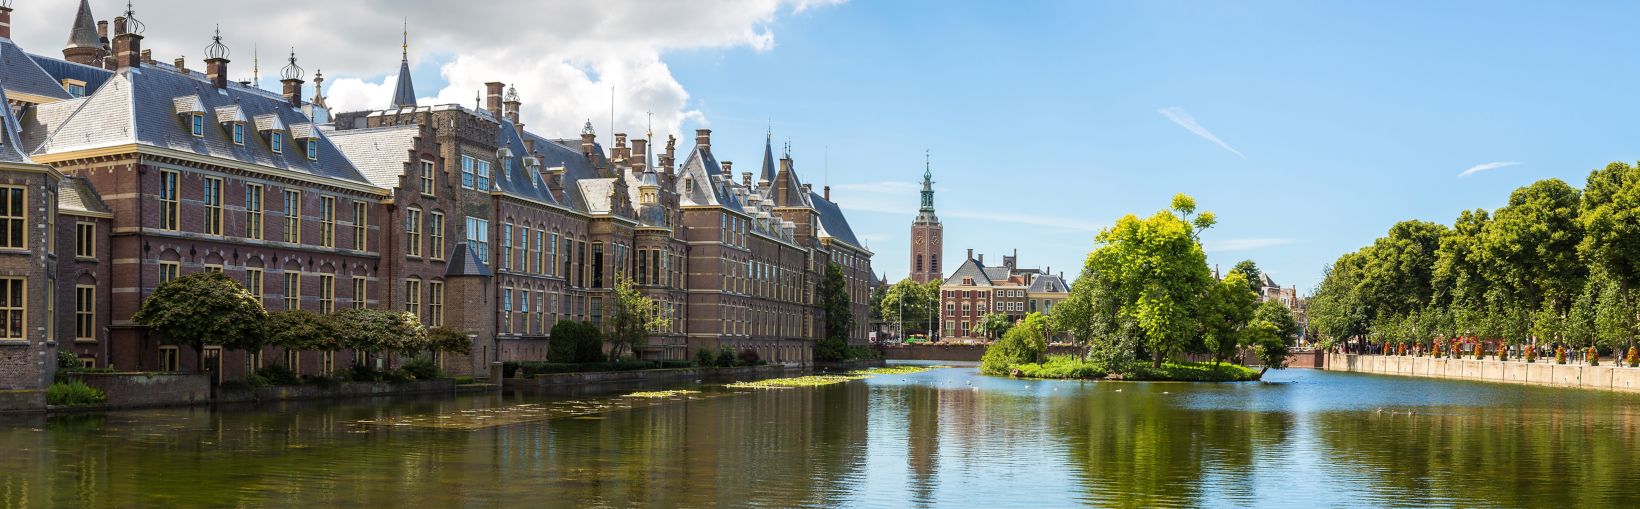 Palacio Binnenhof, parlamento holandés en La Haya en un hermoso día de verano, Países Bajos